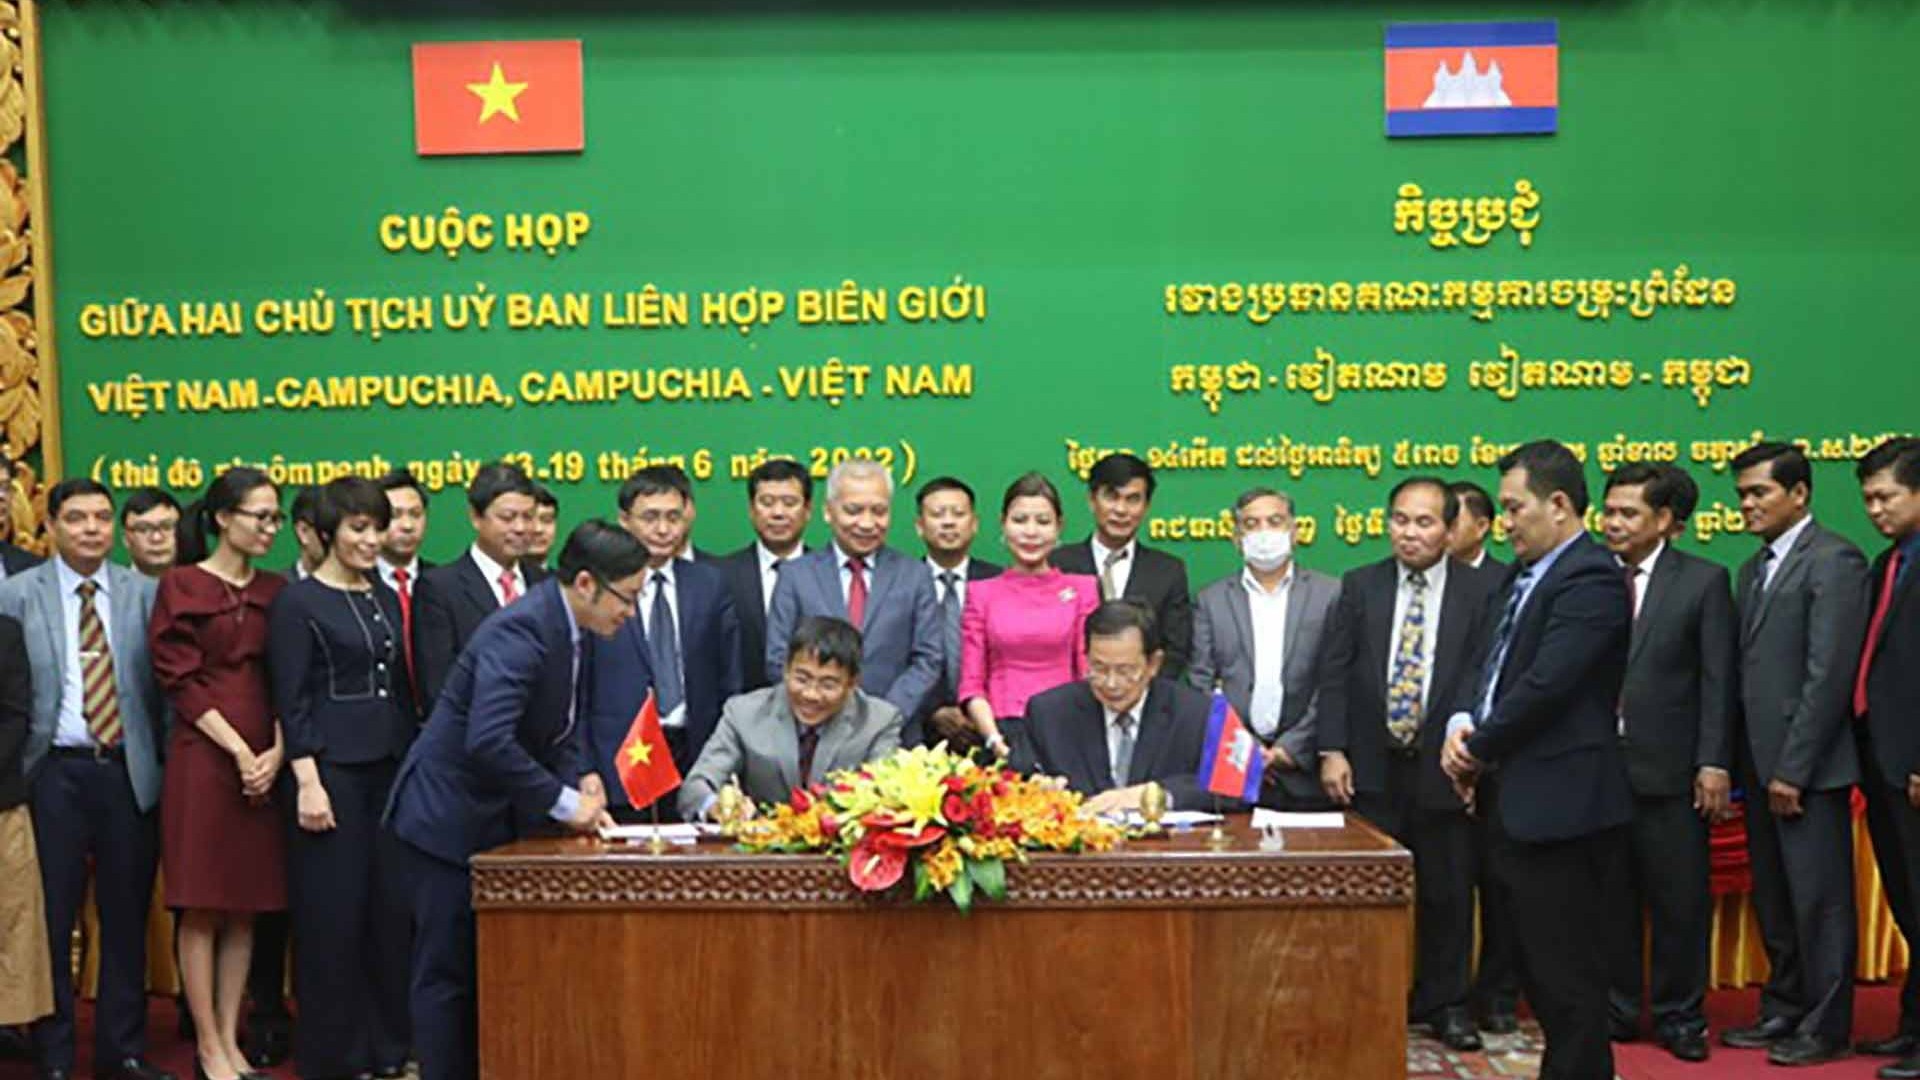 Họp Chủ tịch Ủy ban liên hợp biên giới Việt Nam-Campuchia, Campuchia-Việt Nam